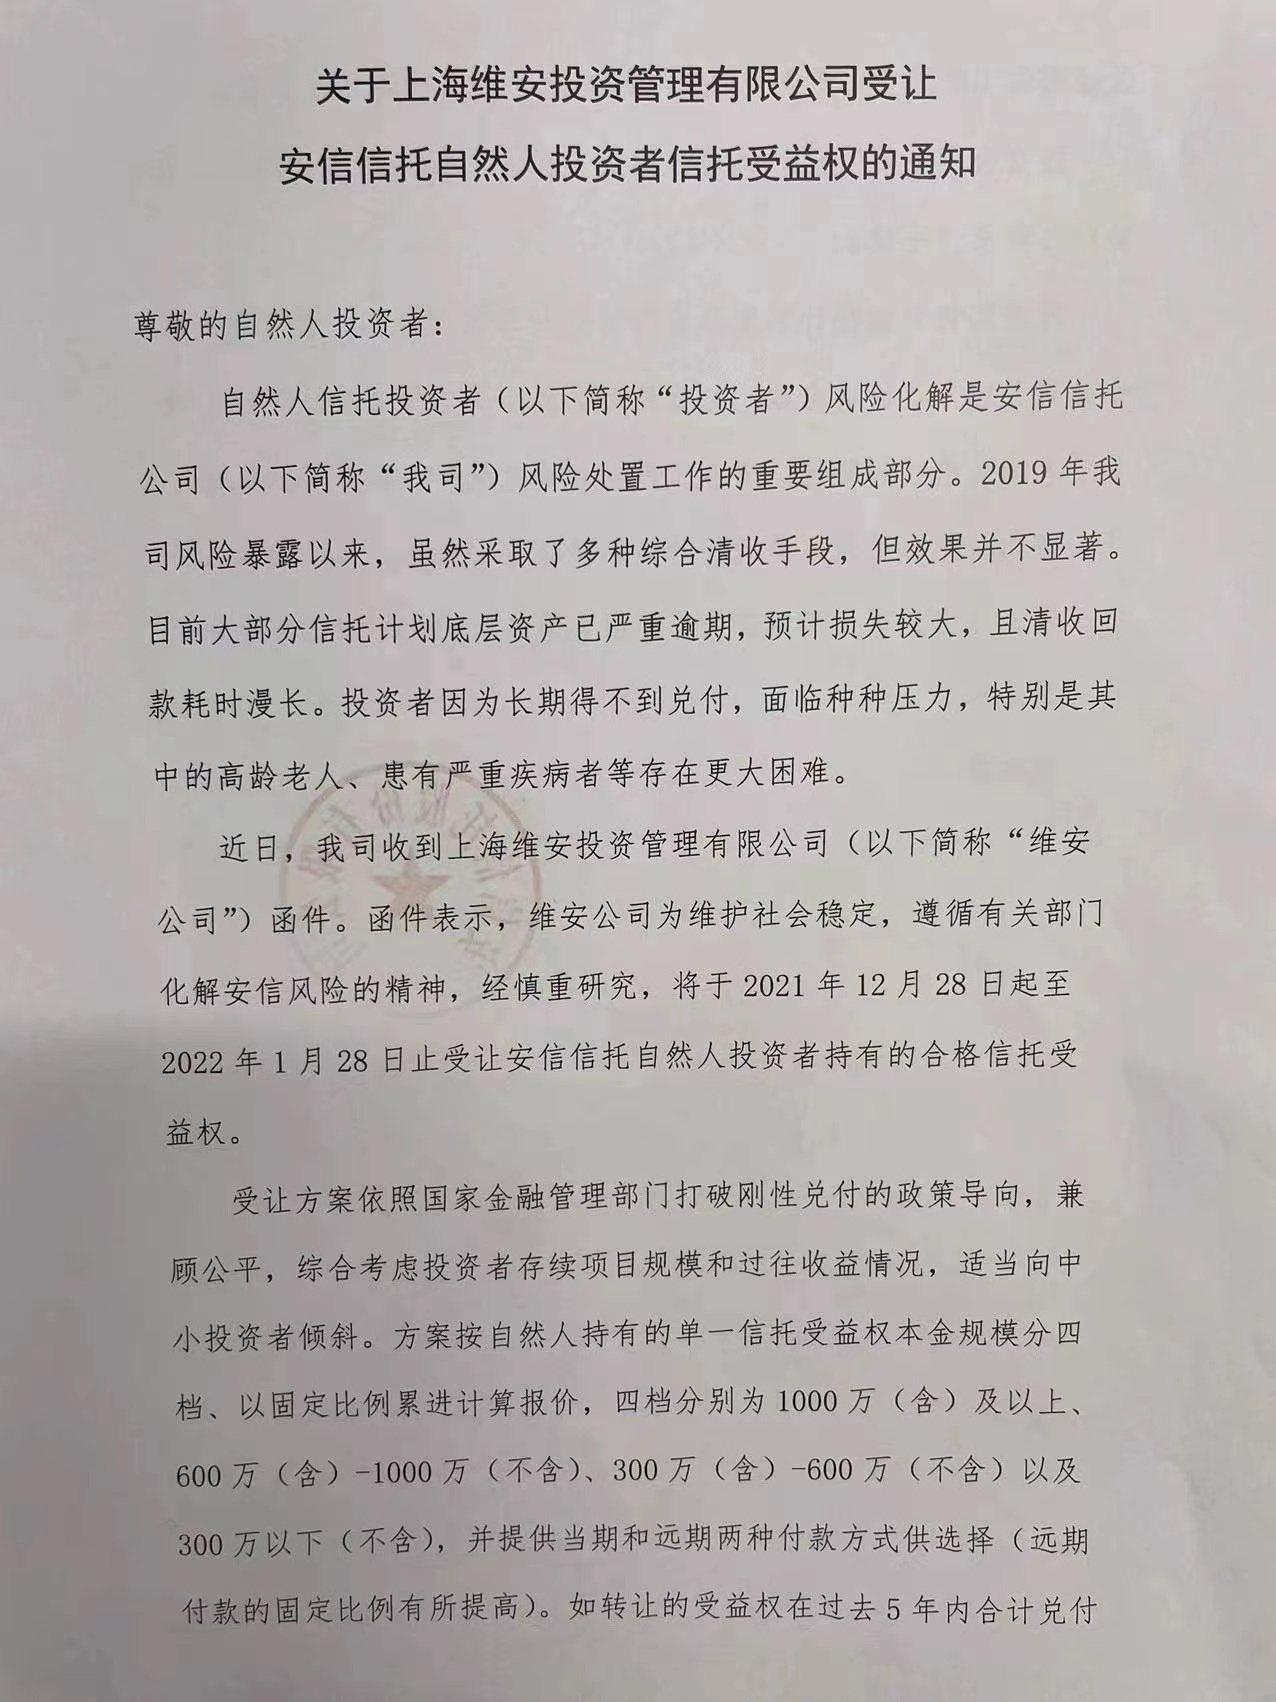 资料来源：《关于上海维安投资管理有限公司受让安信信托自然人投资者信托受益权的通知》